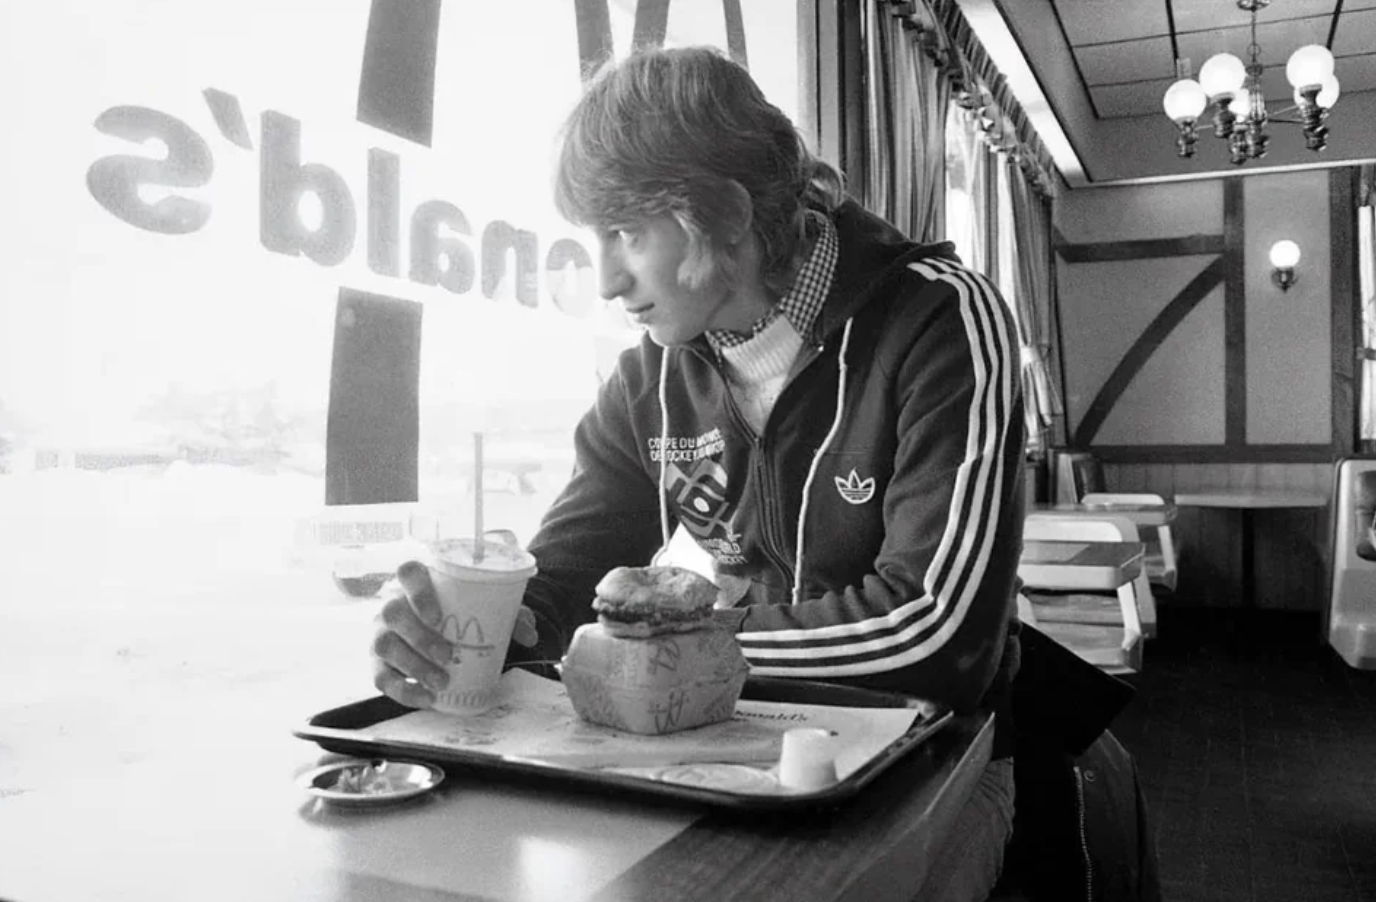 16-year-old Wayne Gretzky has breakfast at McDonald’s on Jan. 15, 1978 in Sault Ste. Marie, Ontario.